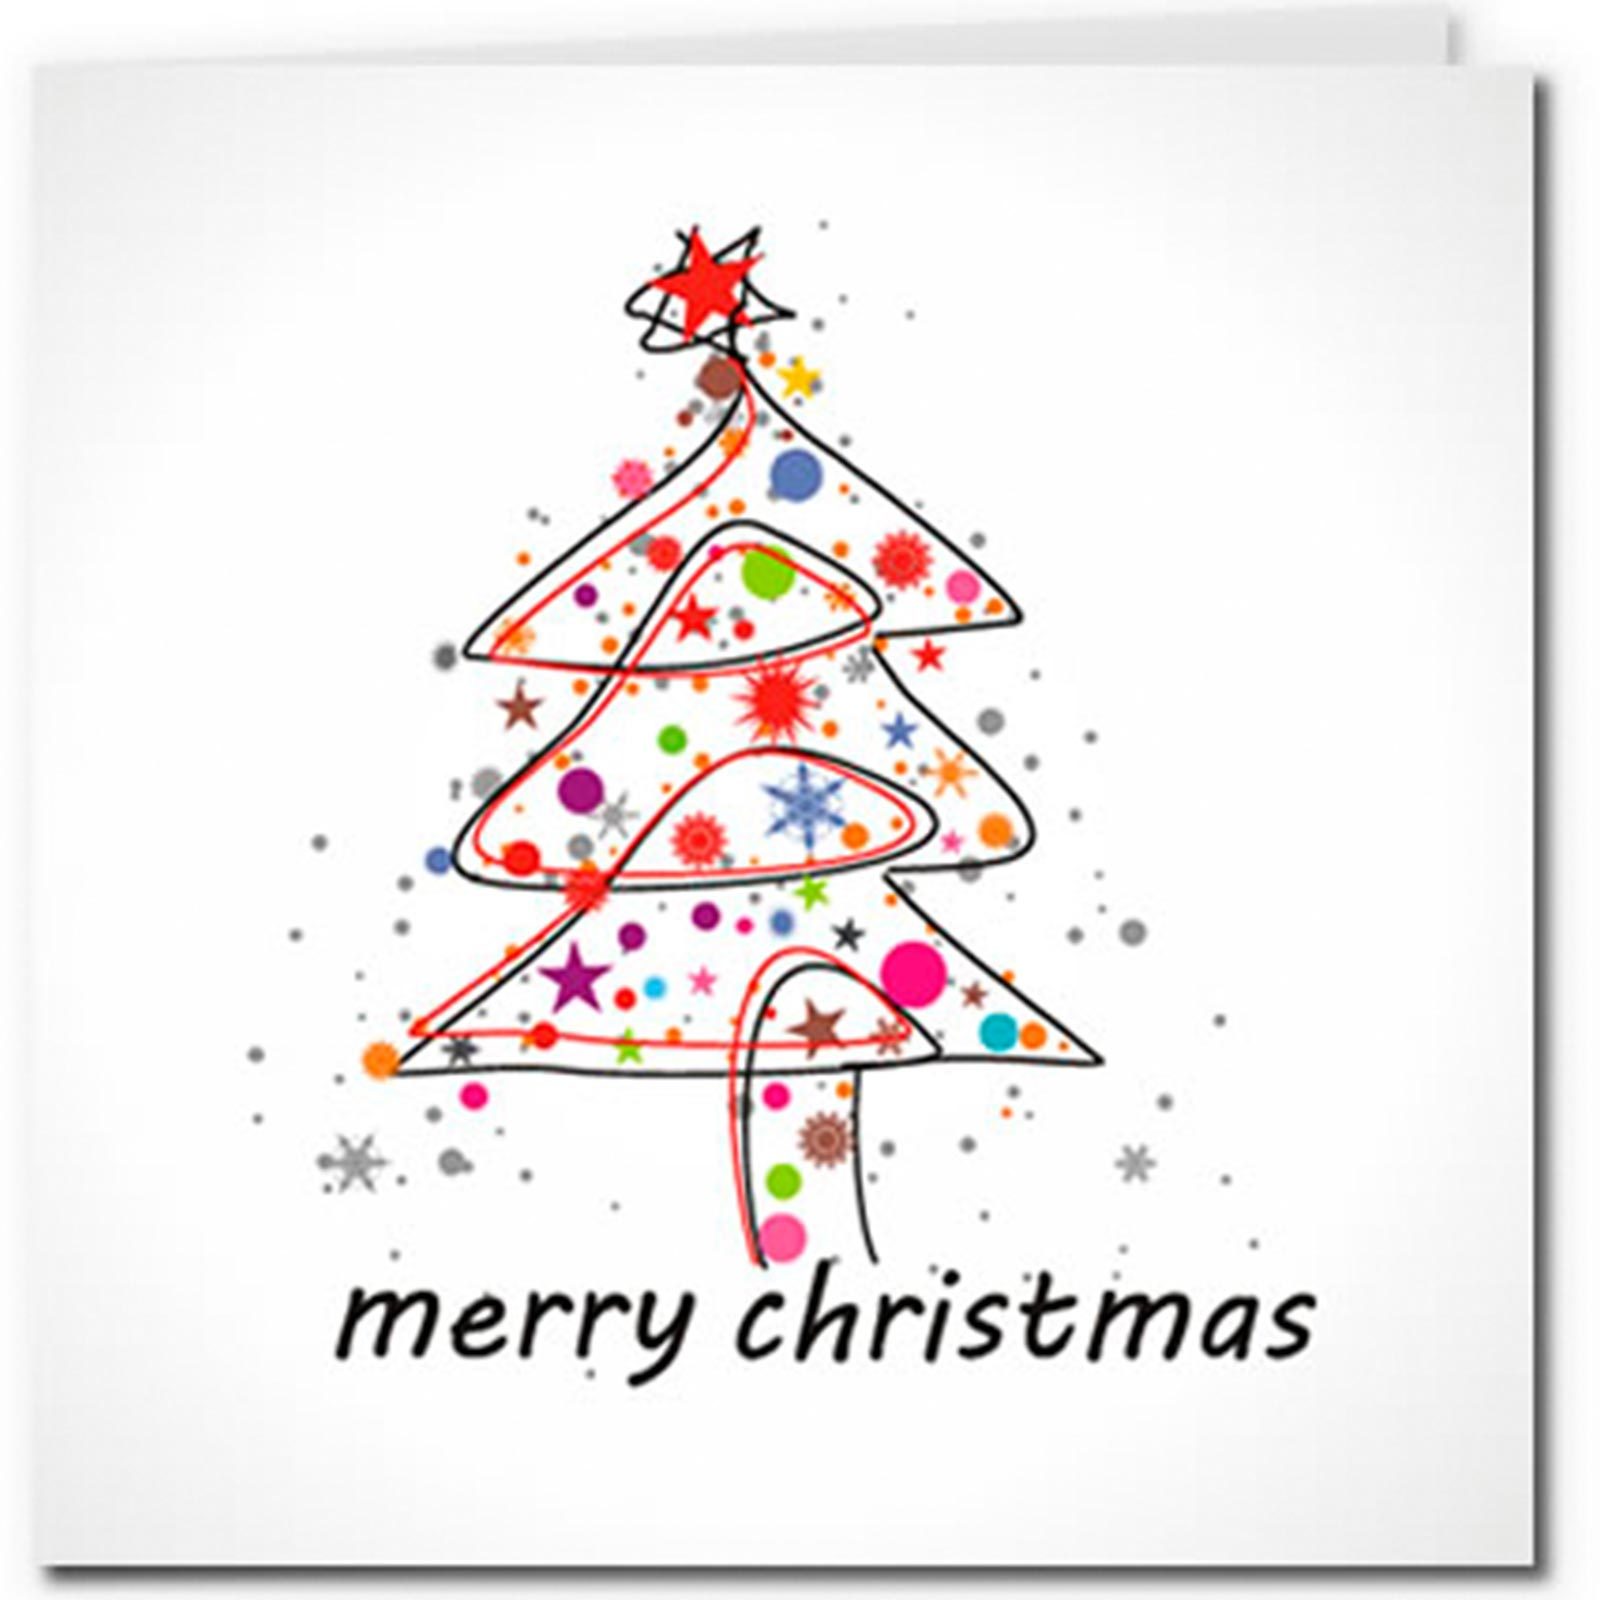 free-printable-christmas-card-images-printable-templates